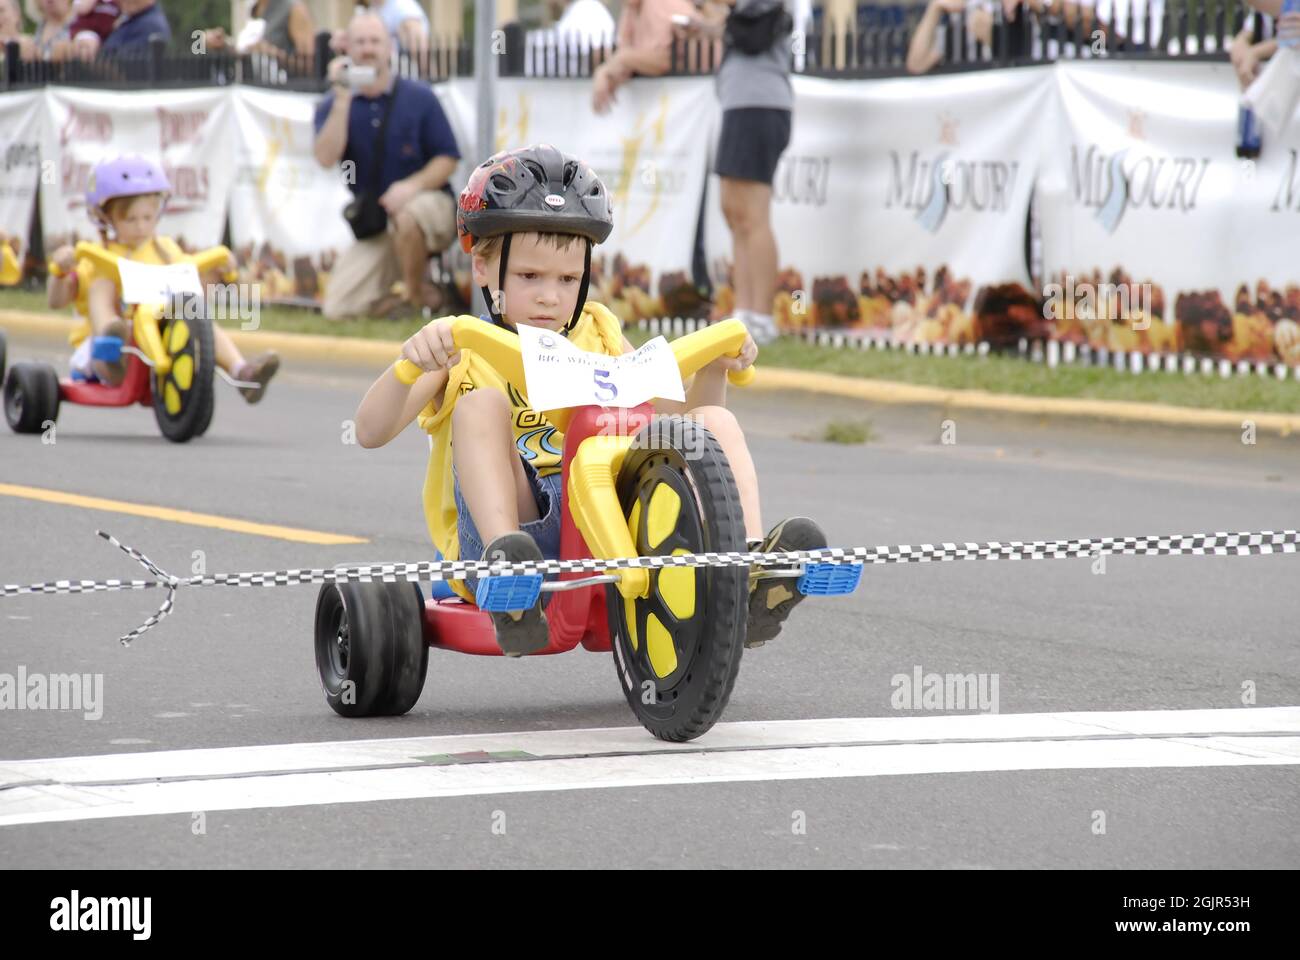 SAINT CHARLES, STATI UNITI D'AMERICA - 14 settembre 2008: Un ragazzo giovane che guida un triciclo 'Big Wheel' in una gara in Missouri Foto Stock